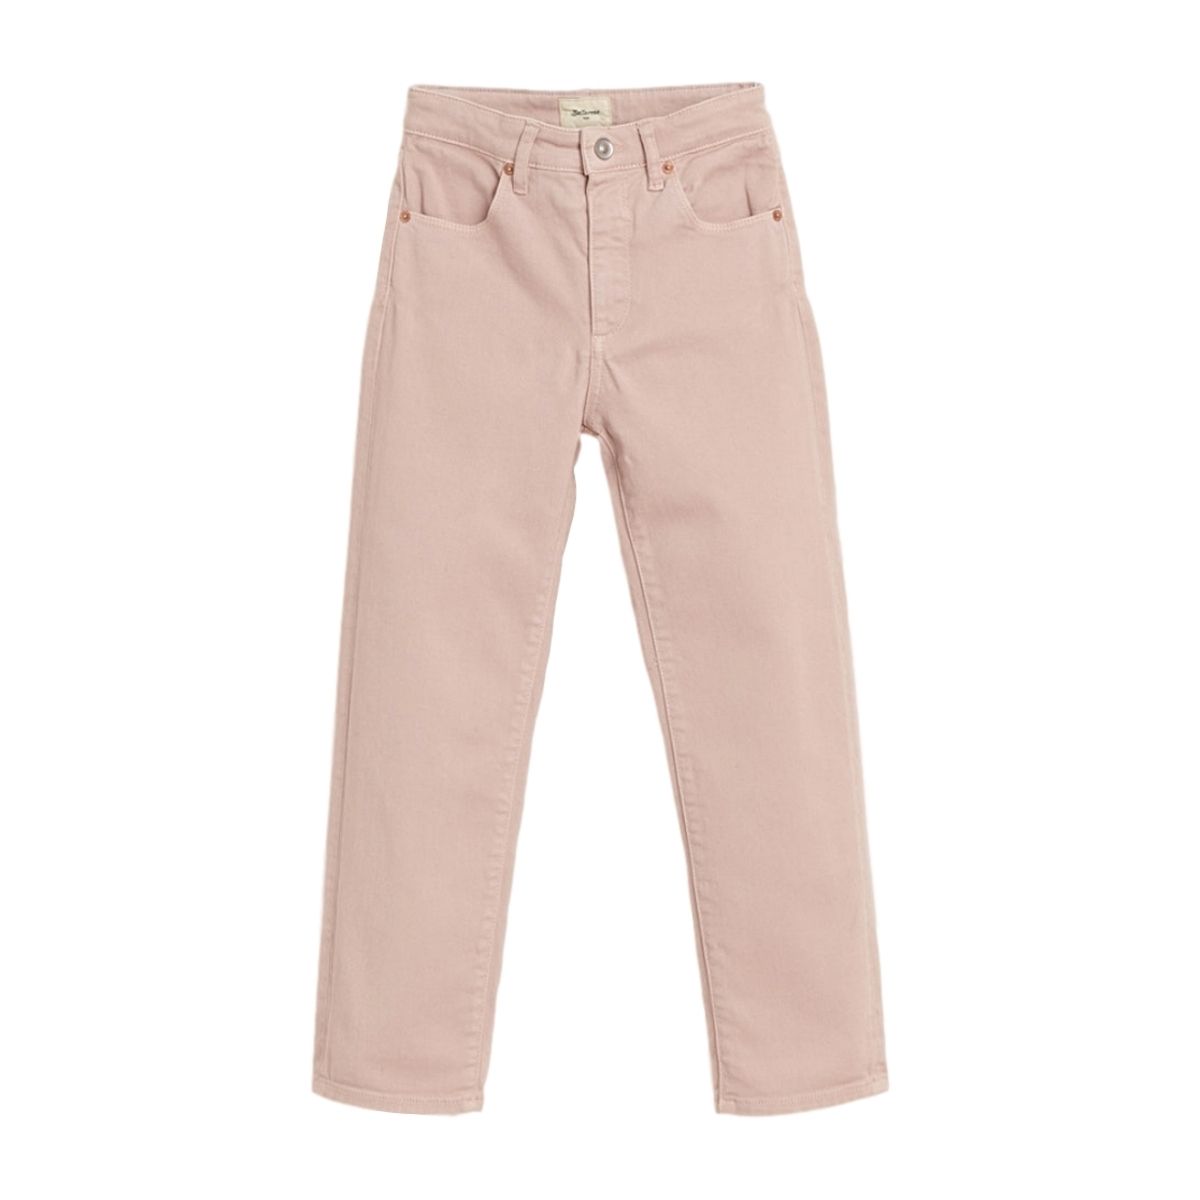 Bellerose Spodnie Pinata różowe BK192105 R0732 